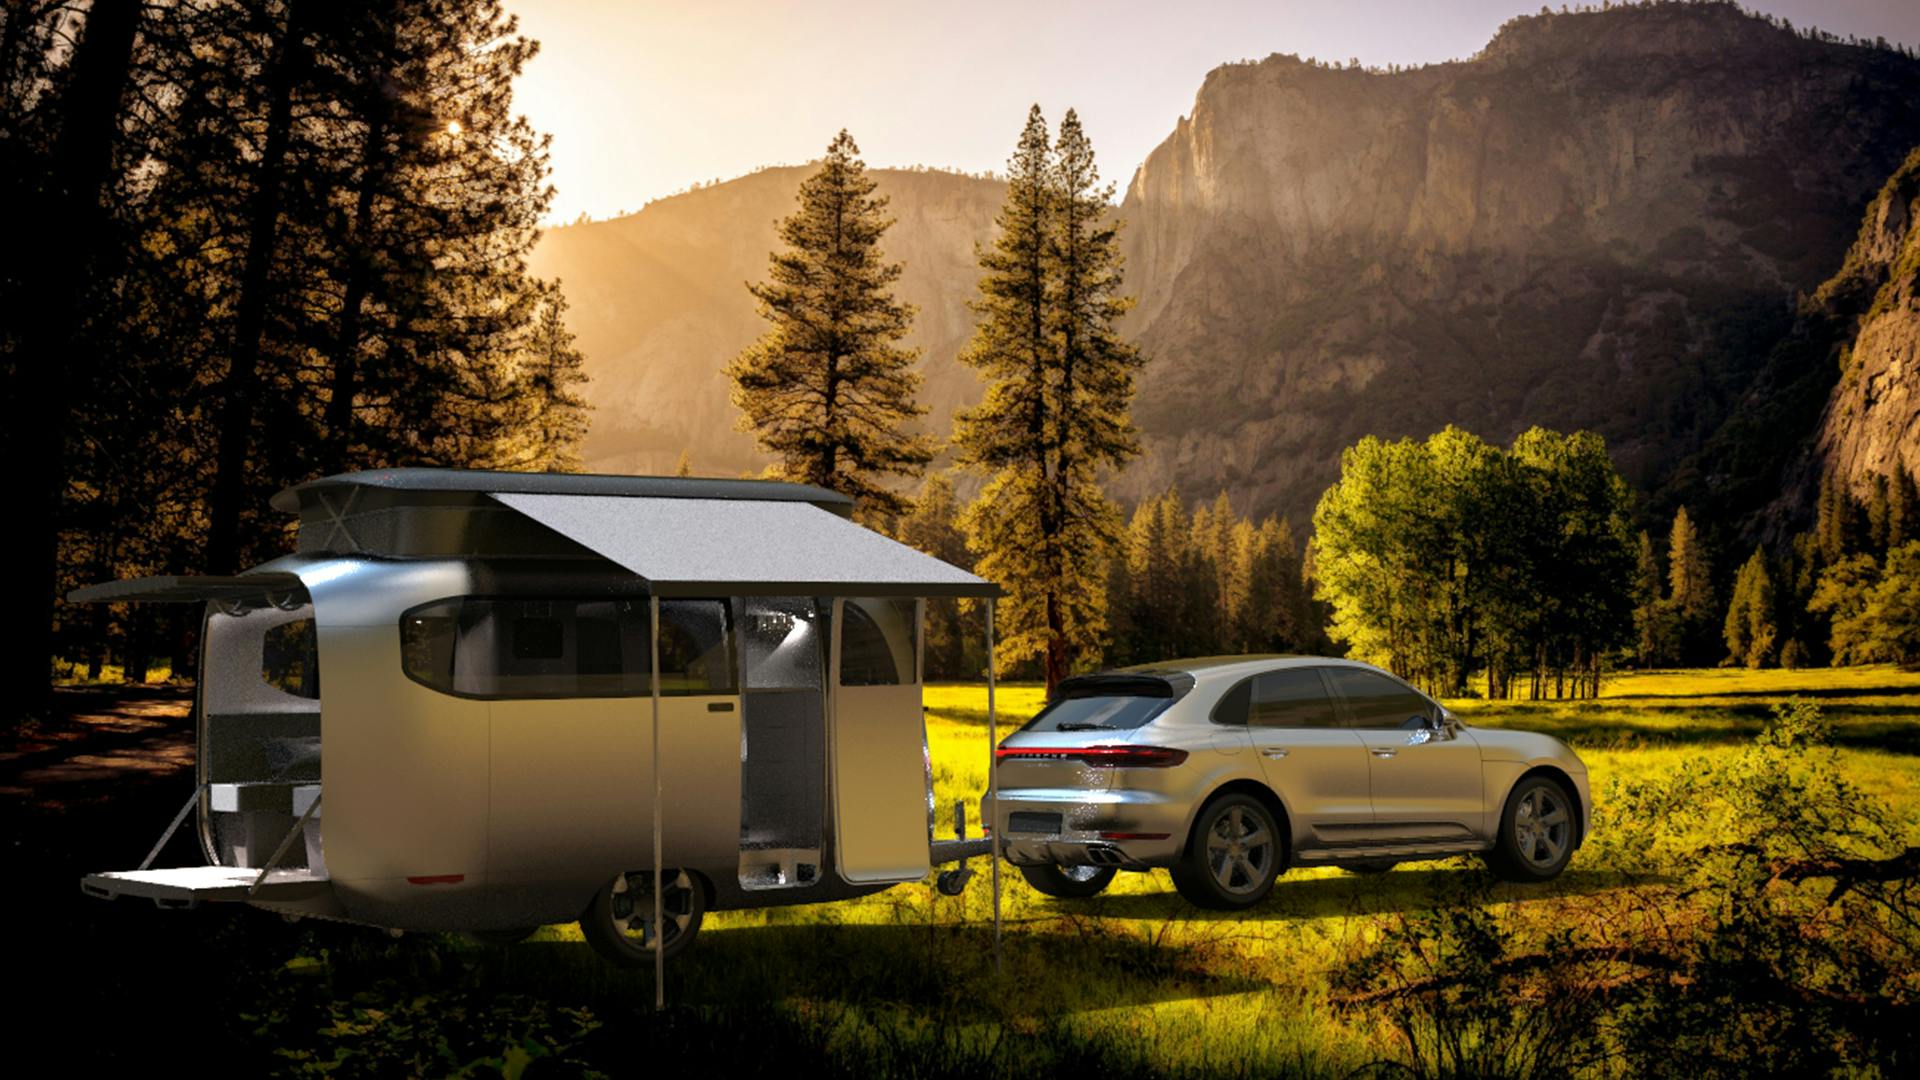 Airstream Porsche camper trailer wilderness setup